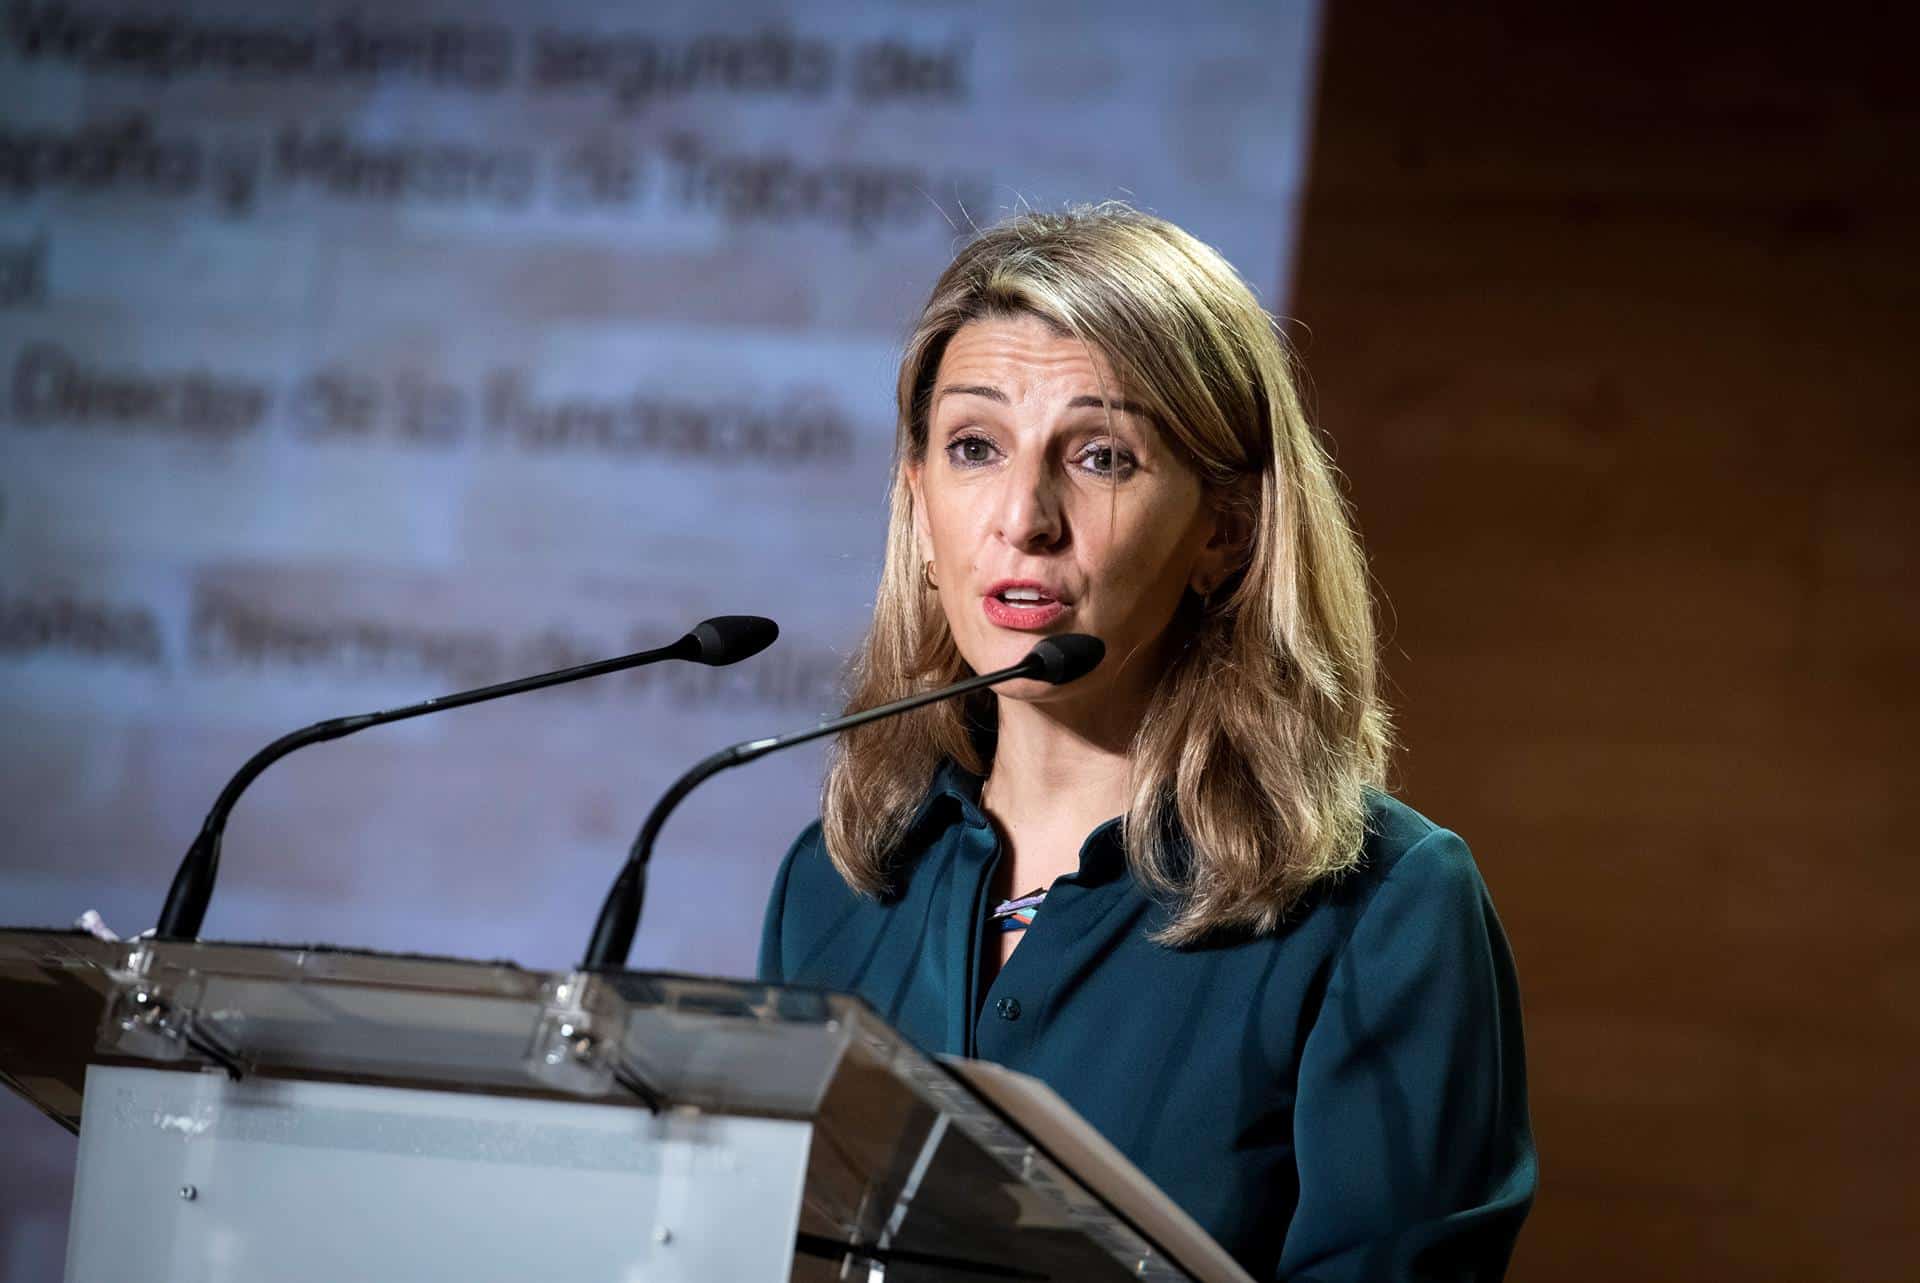 La vicepresidenta segunda del Gobierno, Yolanda Díaz, durante unas charlas sobre Empleo en Madrid.